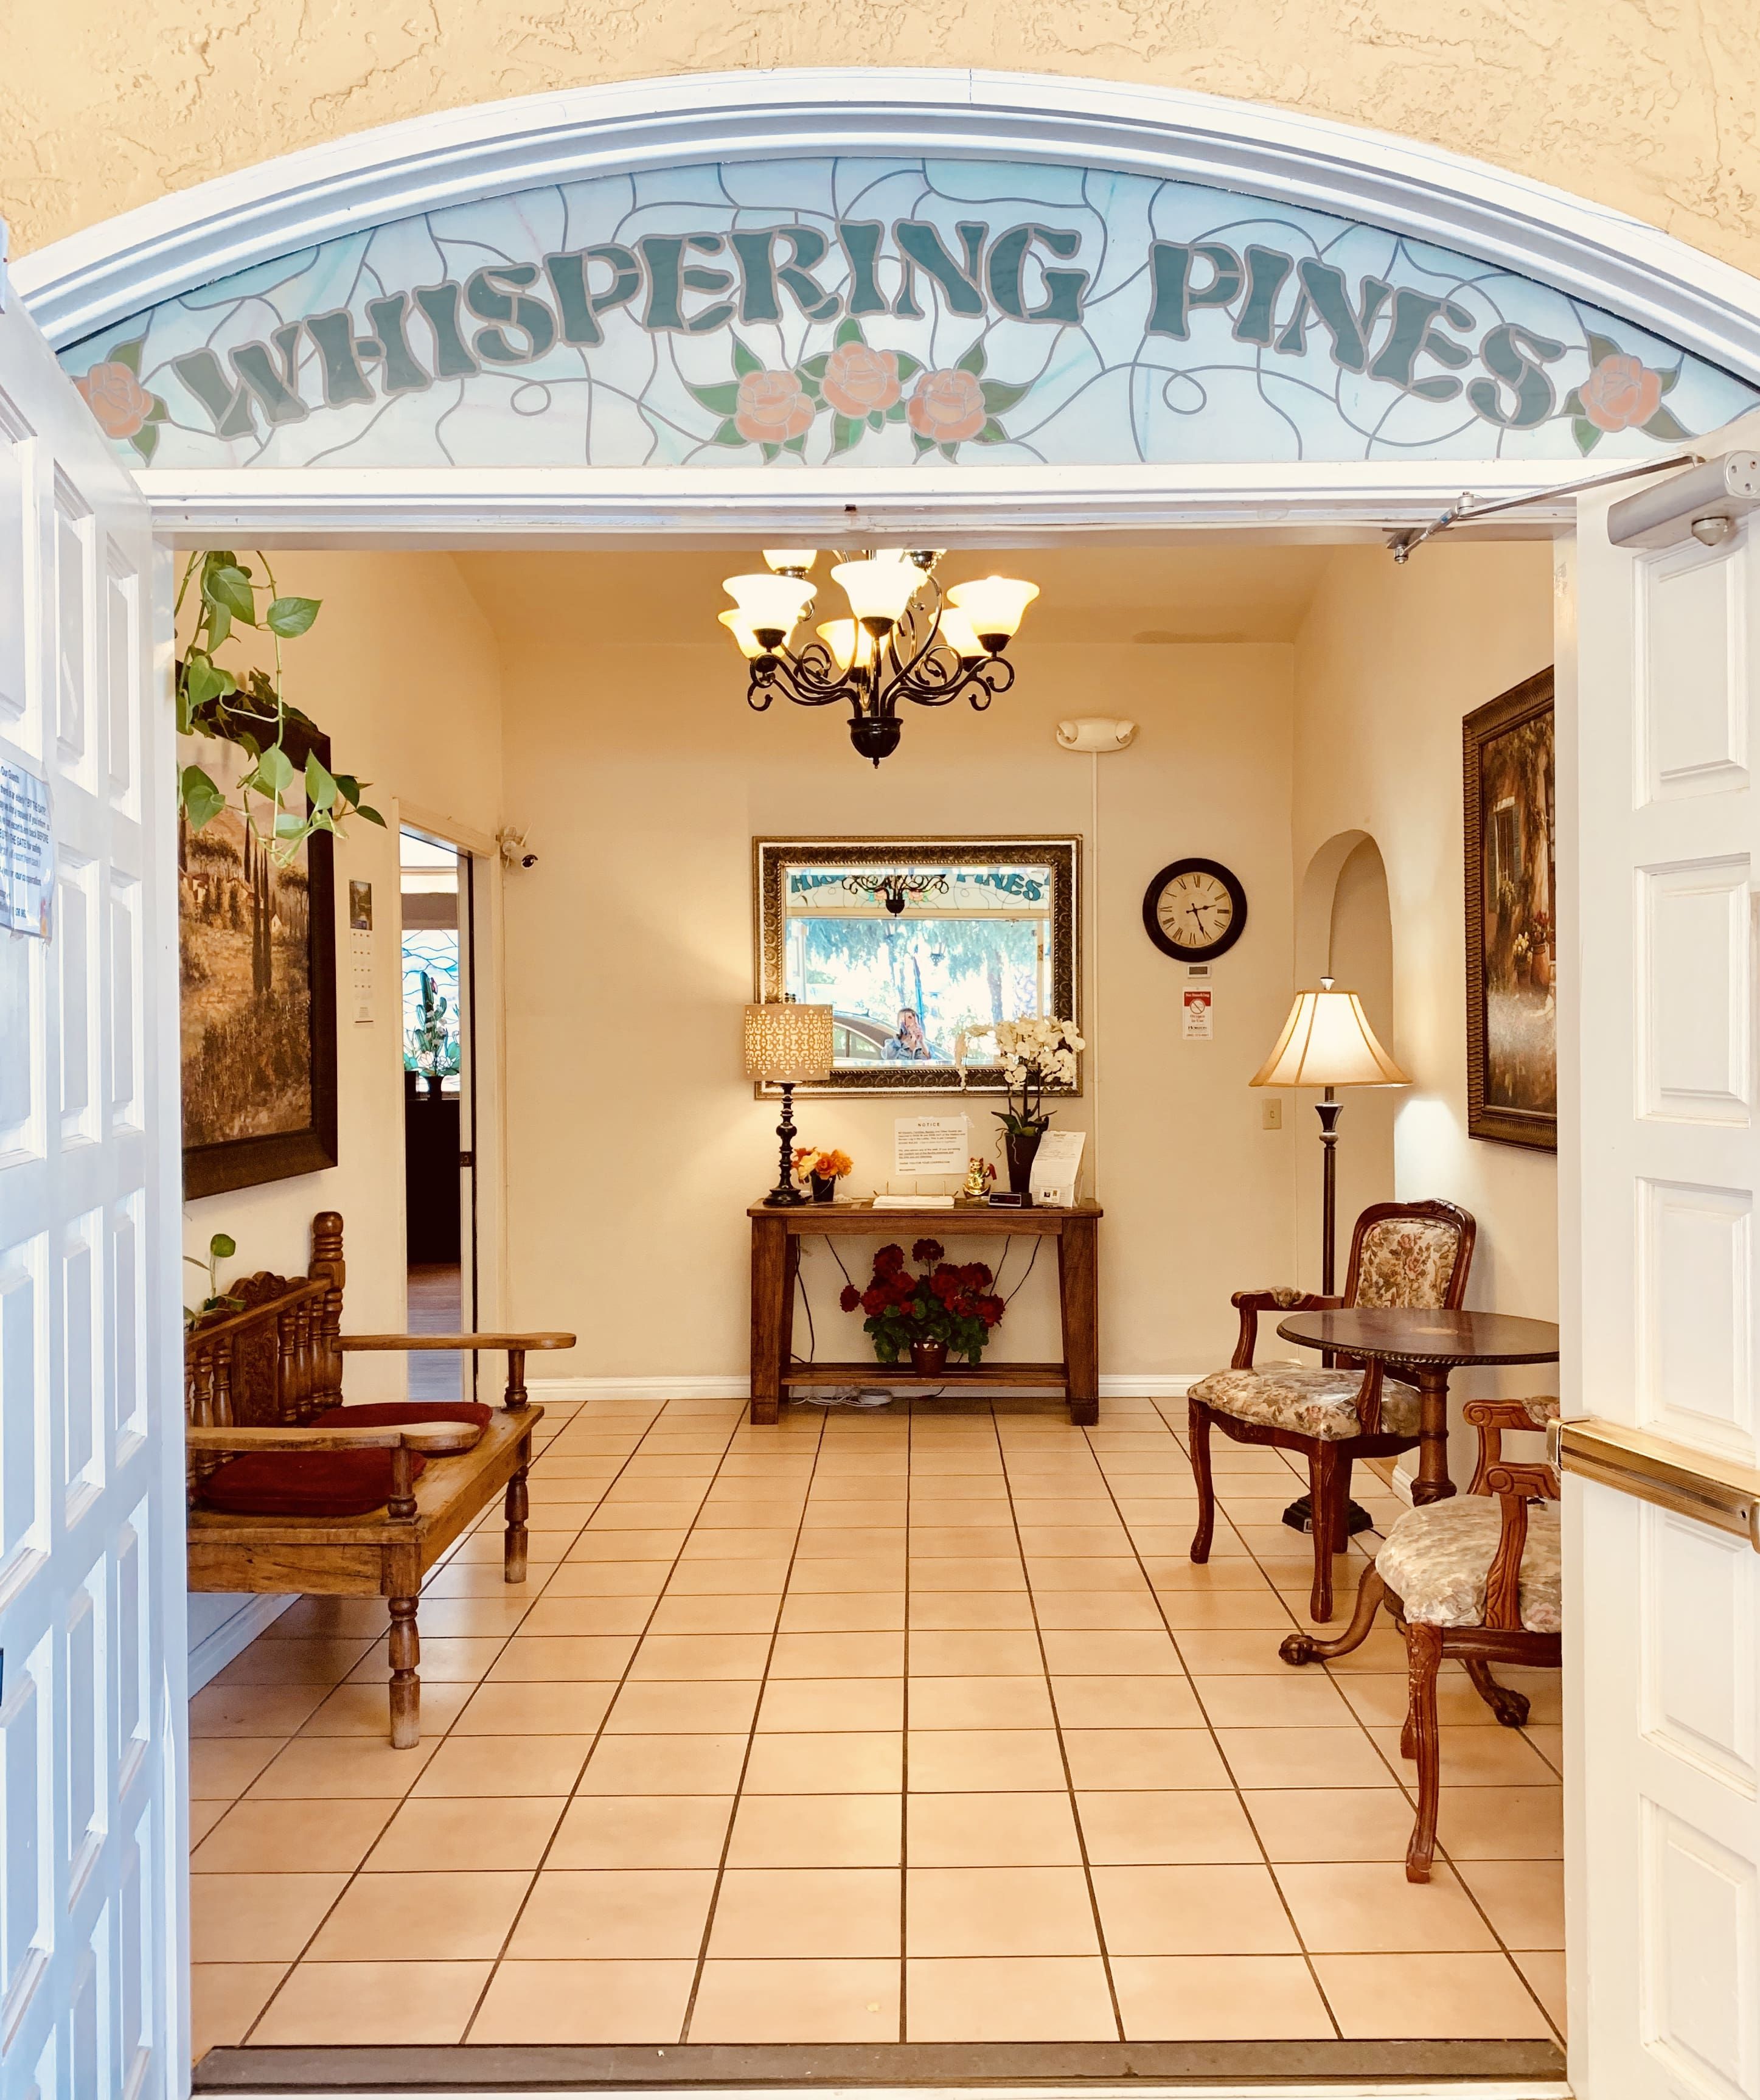 Whispering Pines Inn 4